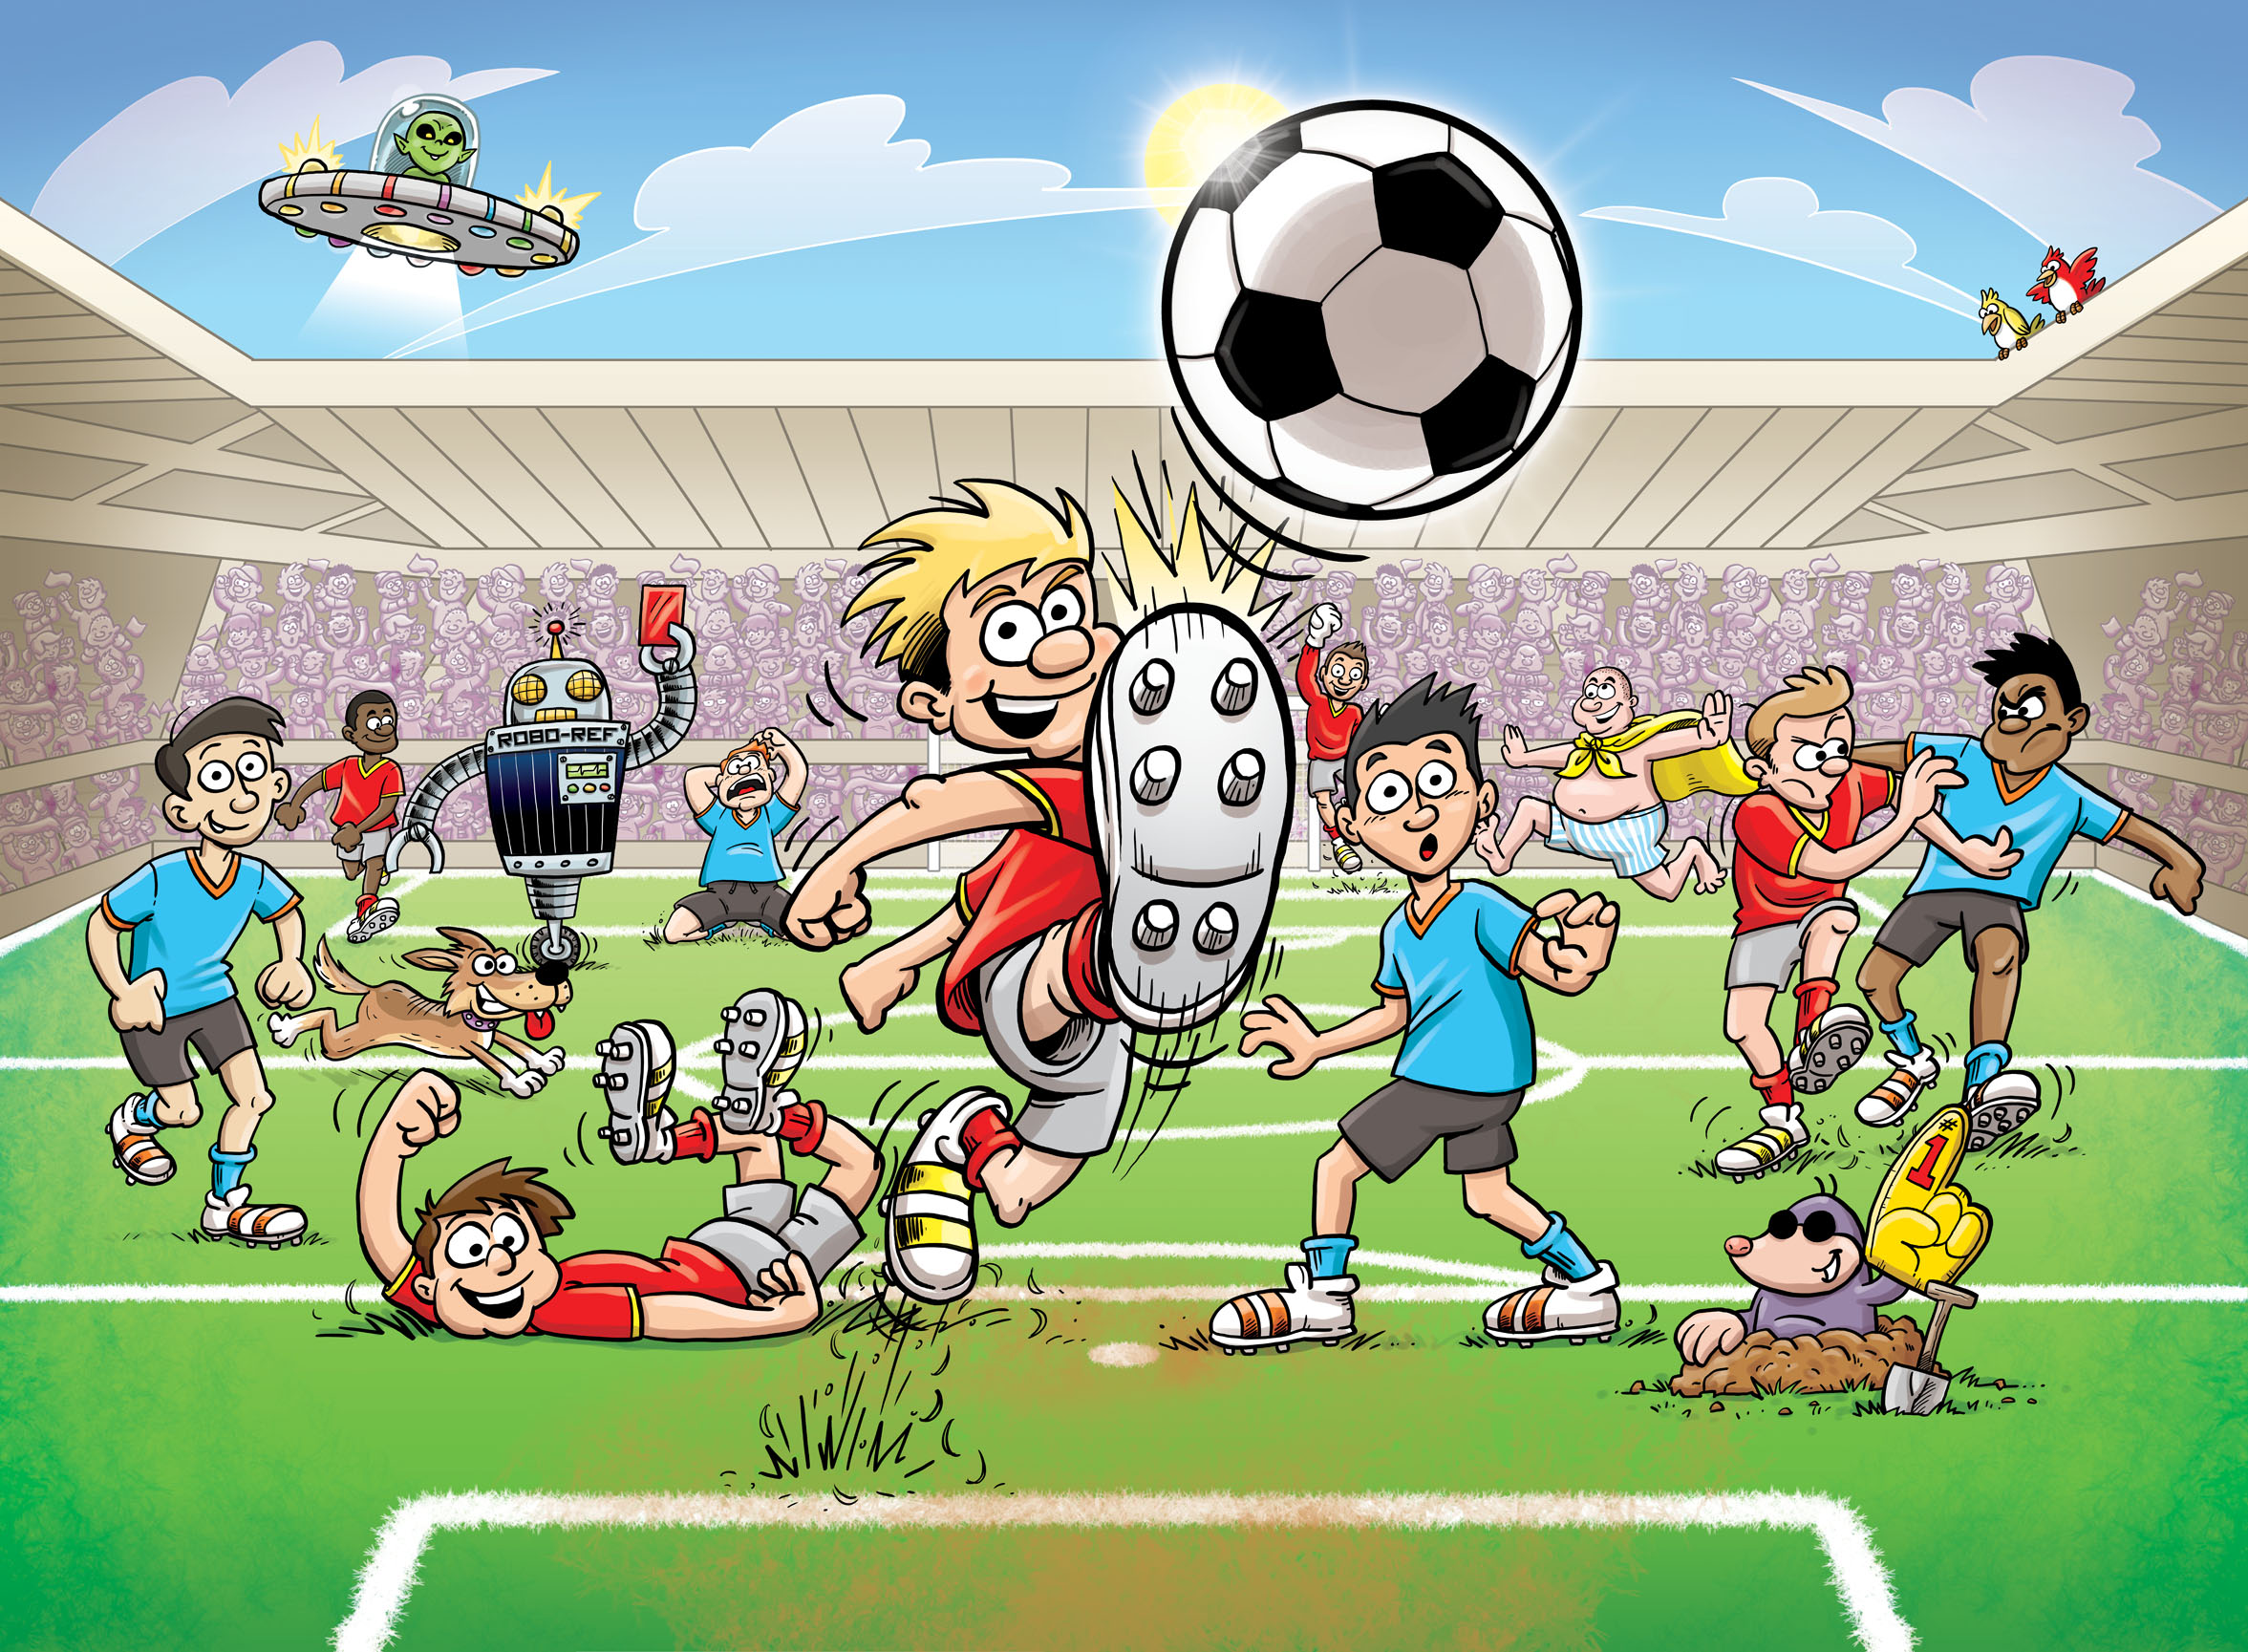 carta da parati murale di calcio,calcio,cartone animato,palla da calcio,cartone animato,giocatore